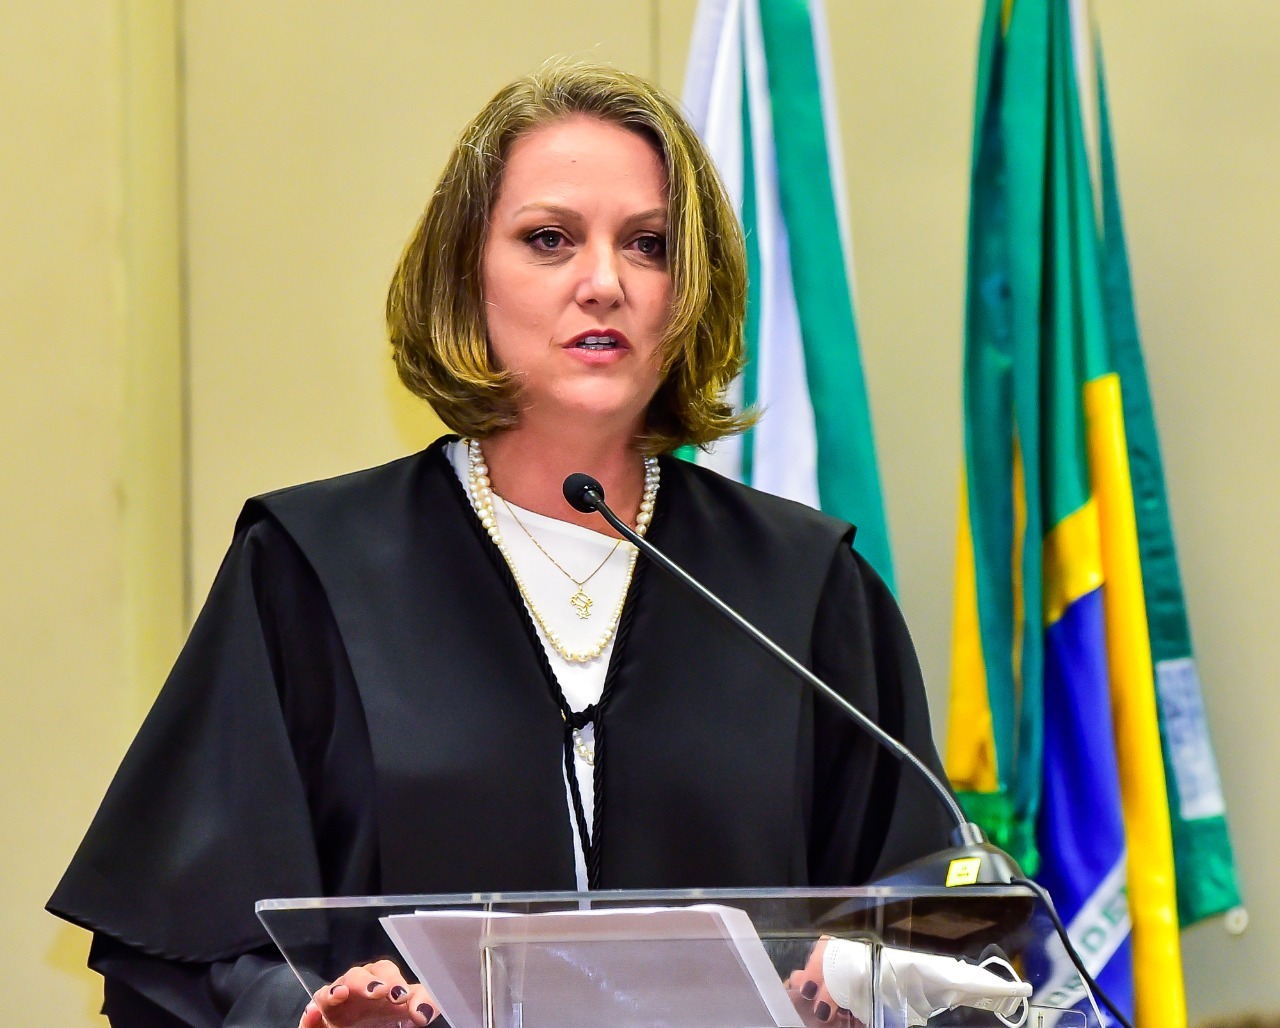 Juíza Fernanda Hilzendeger Marcon discursando no púlpito. Ela olha para o público. A Magistrada tem algumas folhas de papel às mãos. Atrás da Juíza, vemos, no mastro, a bandeira do Brasil e do Paraná.